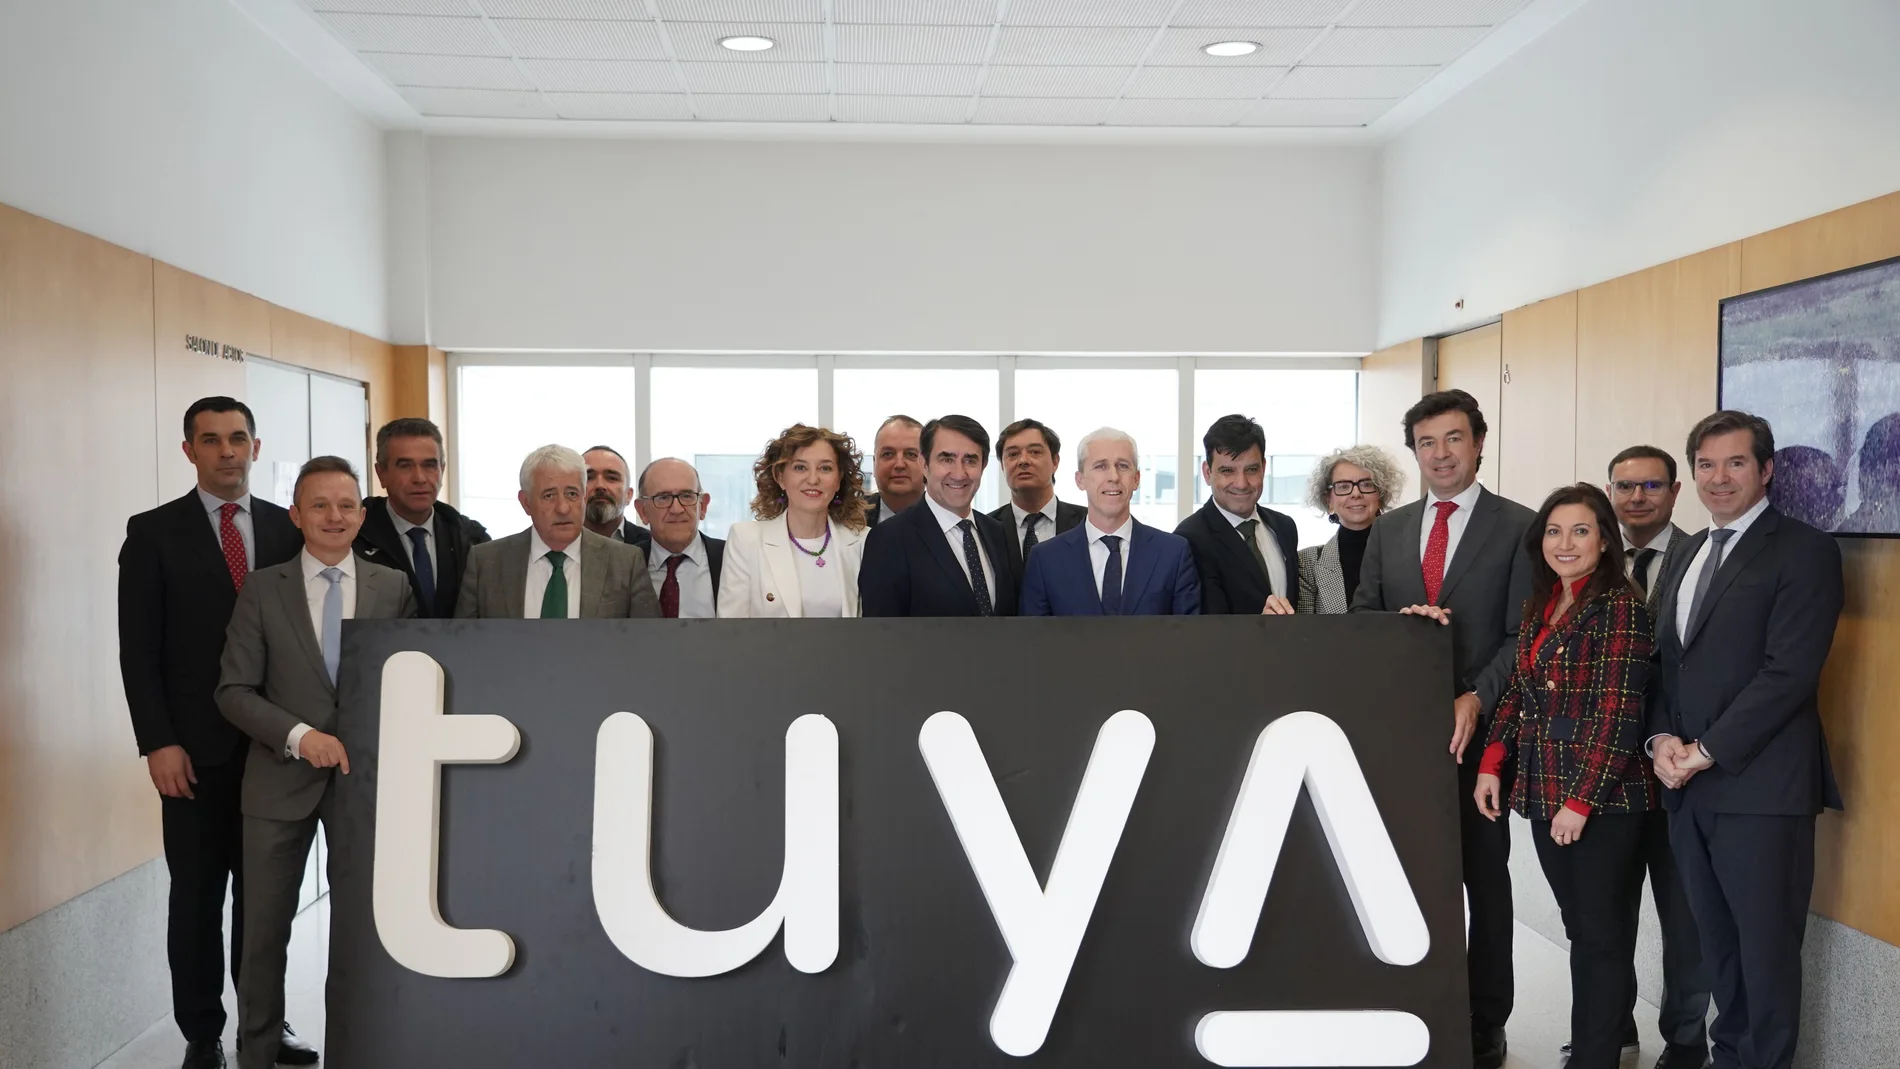 El consejero Suárez-Quiñones hace balance del Plan Tuya